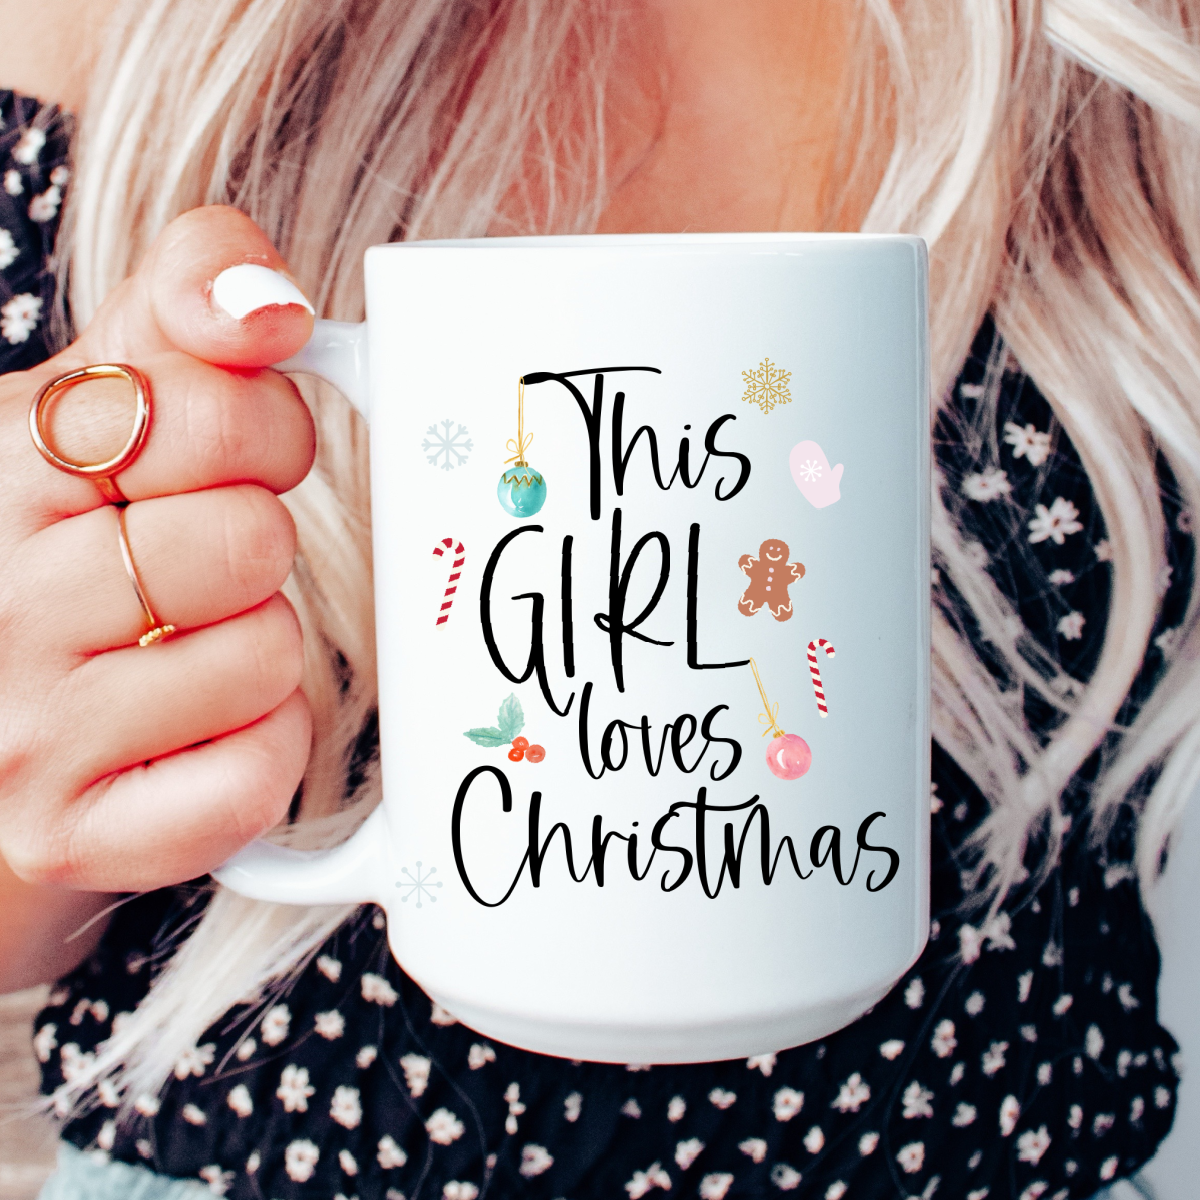 This girl loves Christmas mug, Christmas mug, Holiday mug